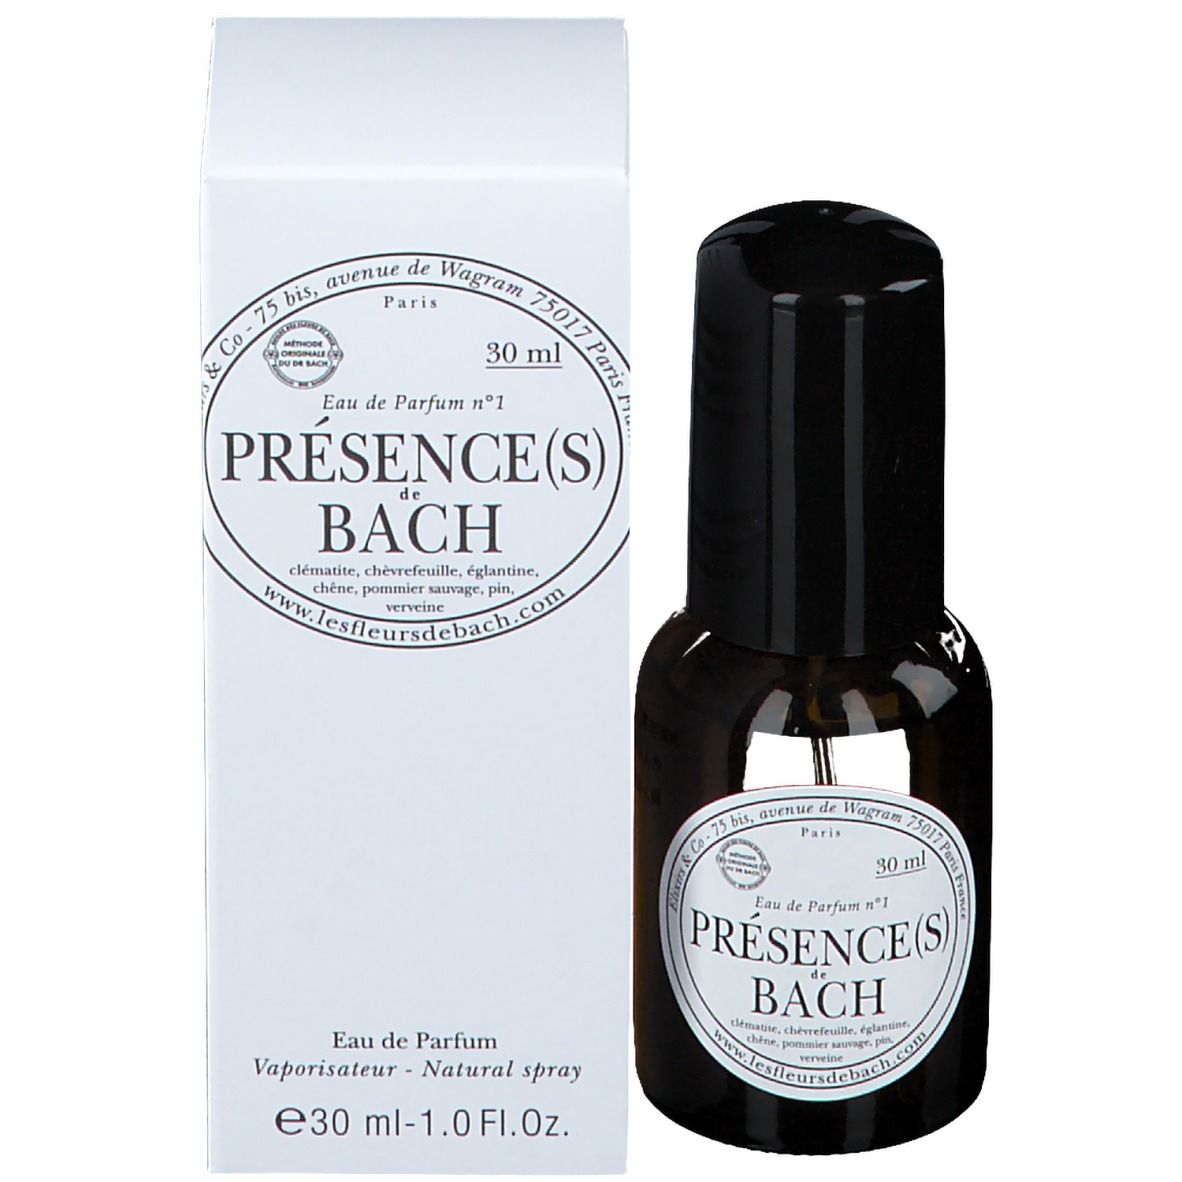 Elixirs & Co Eau de Parfum Présence(s)